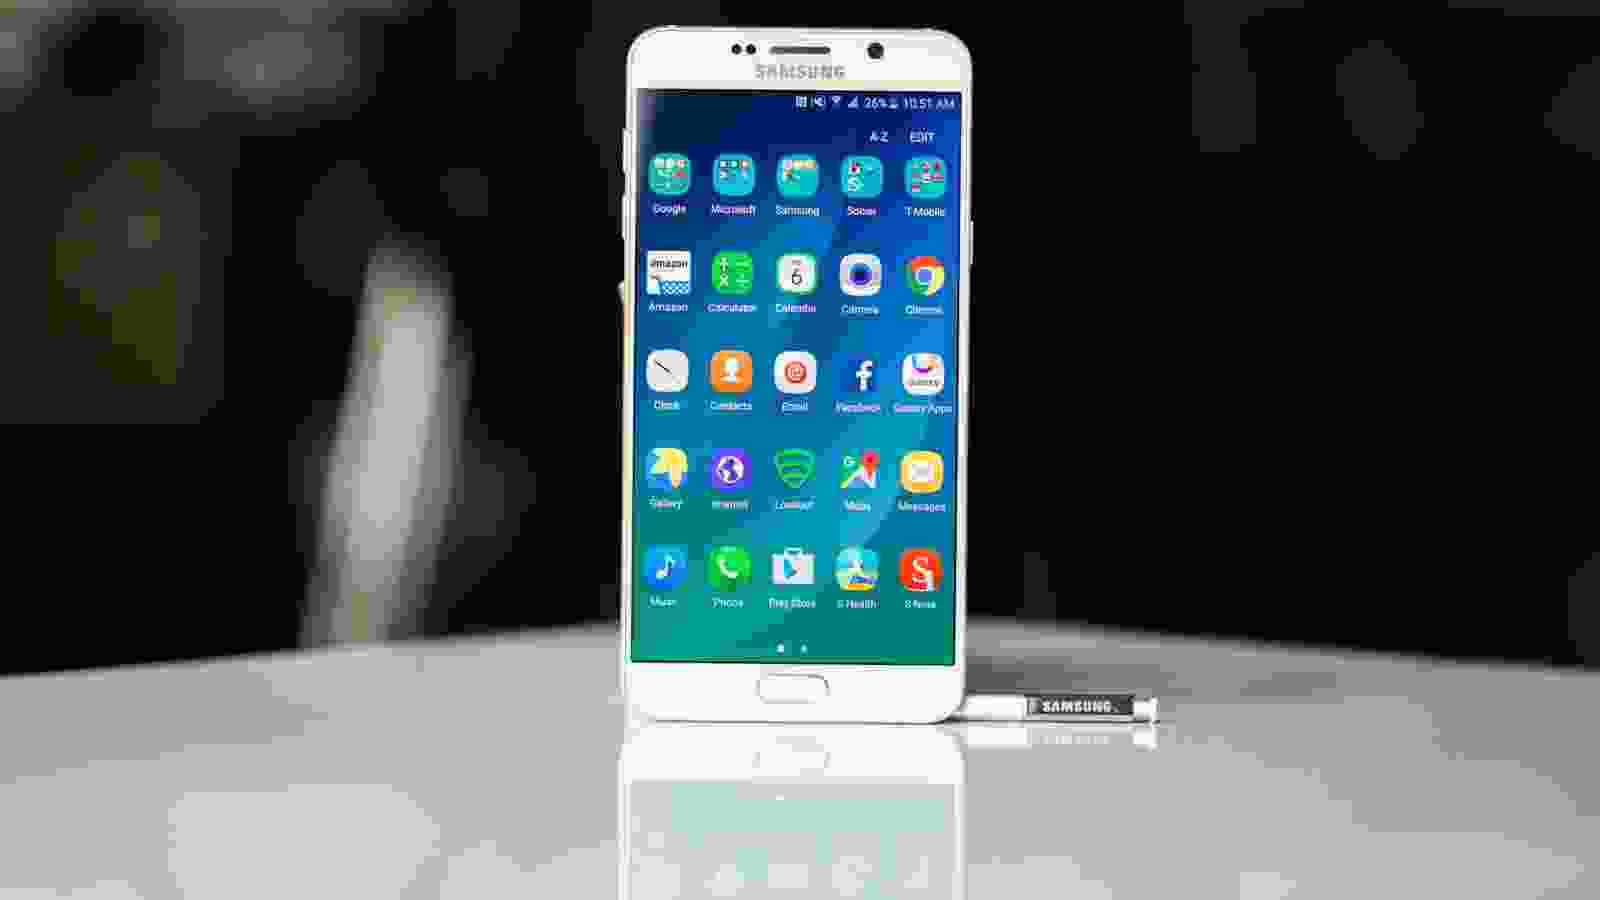 Hãy khám phá chiếc điện thoại Samsung màn hình lớn đầy ấn tượng của chúng tôi! Với kích thước màn hình lớn, bạn sẽ có trải nghiệm xem phim và chơi game cực kỳ thú vị. Bên cạnh đó, thiết kế hiện đại và sang trọng cũng là điểm nhấn của sản phẩm. Hãy để chiếc điện thoại này làm thỏa mãn mọi thị giác của bạn!